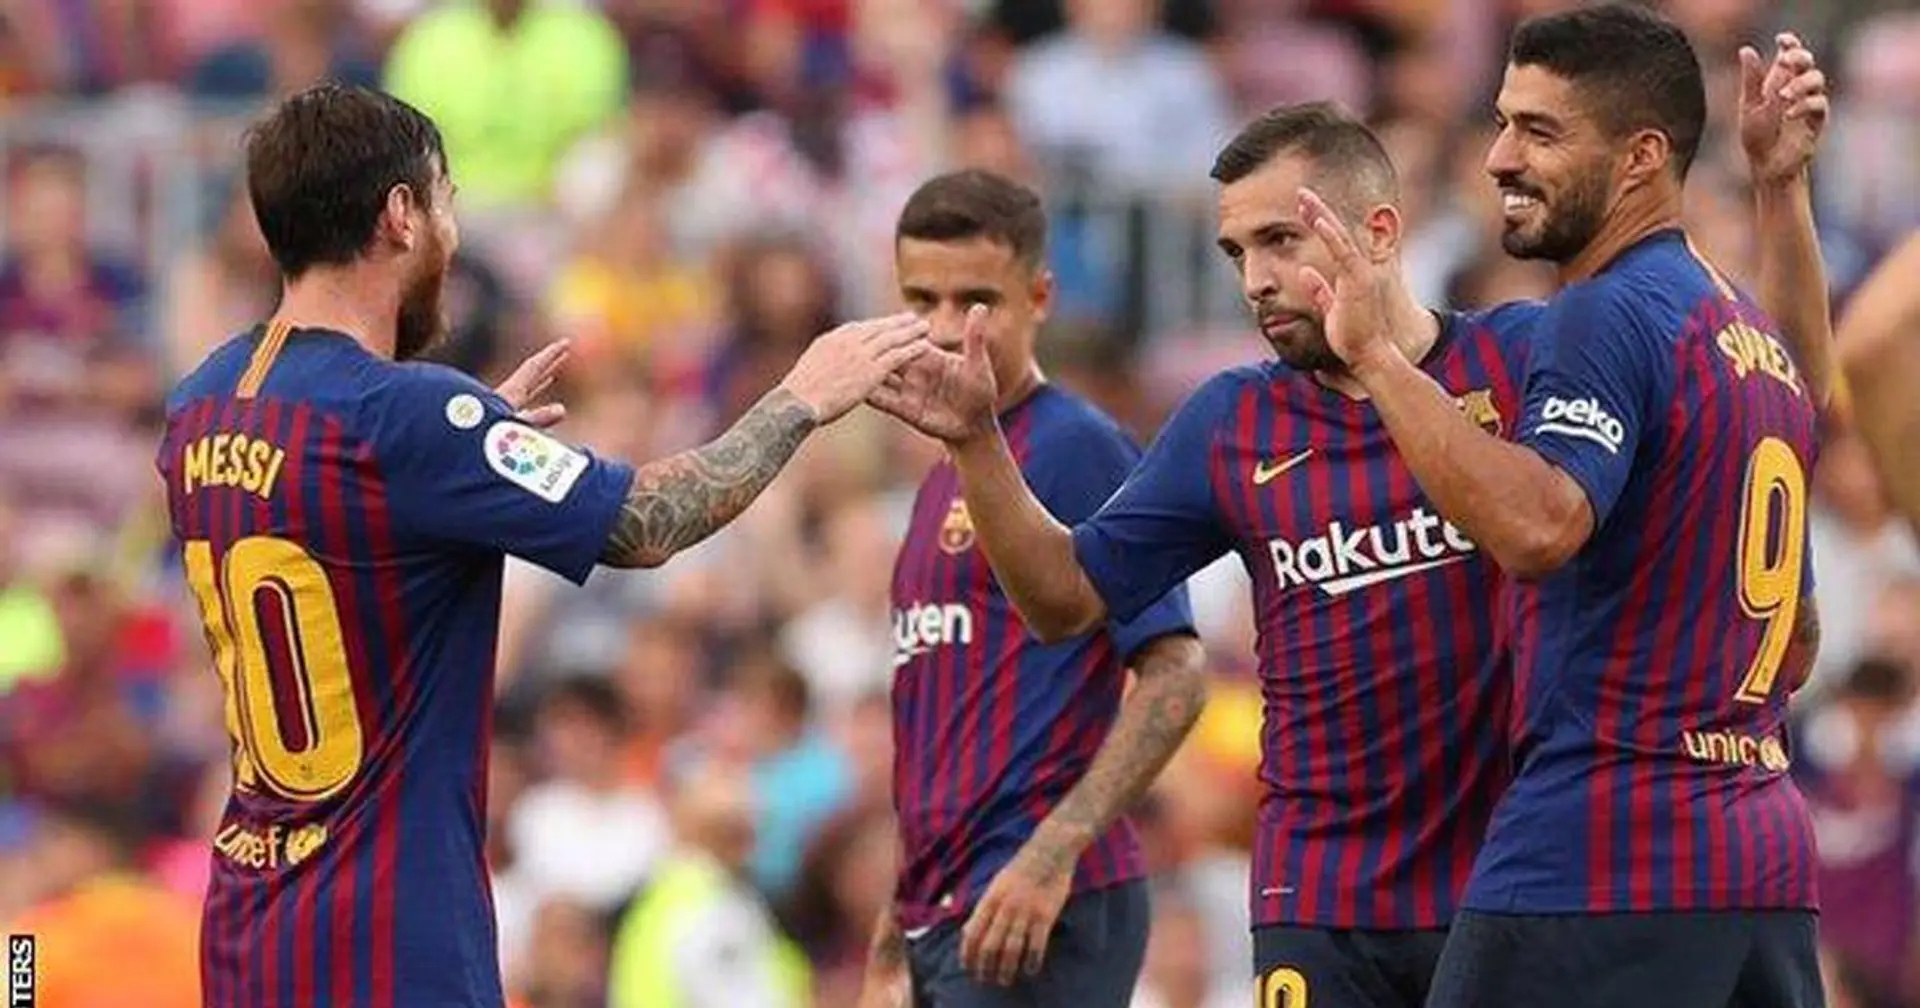 Le ciseaux de Vidal, le doublé de Messi et Suarez: 8 images pour revivre la dernière visite de Huesca au Camp Nou